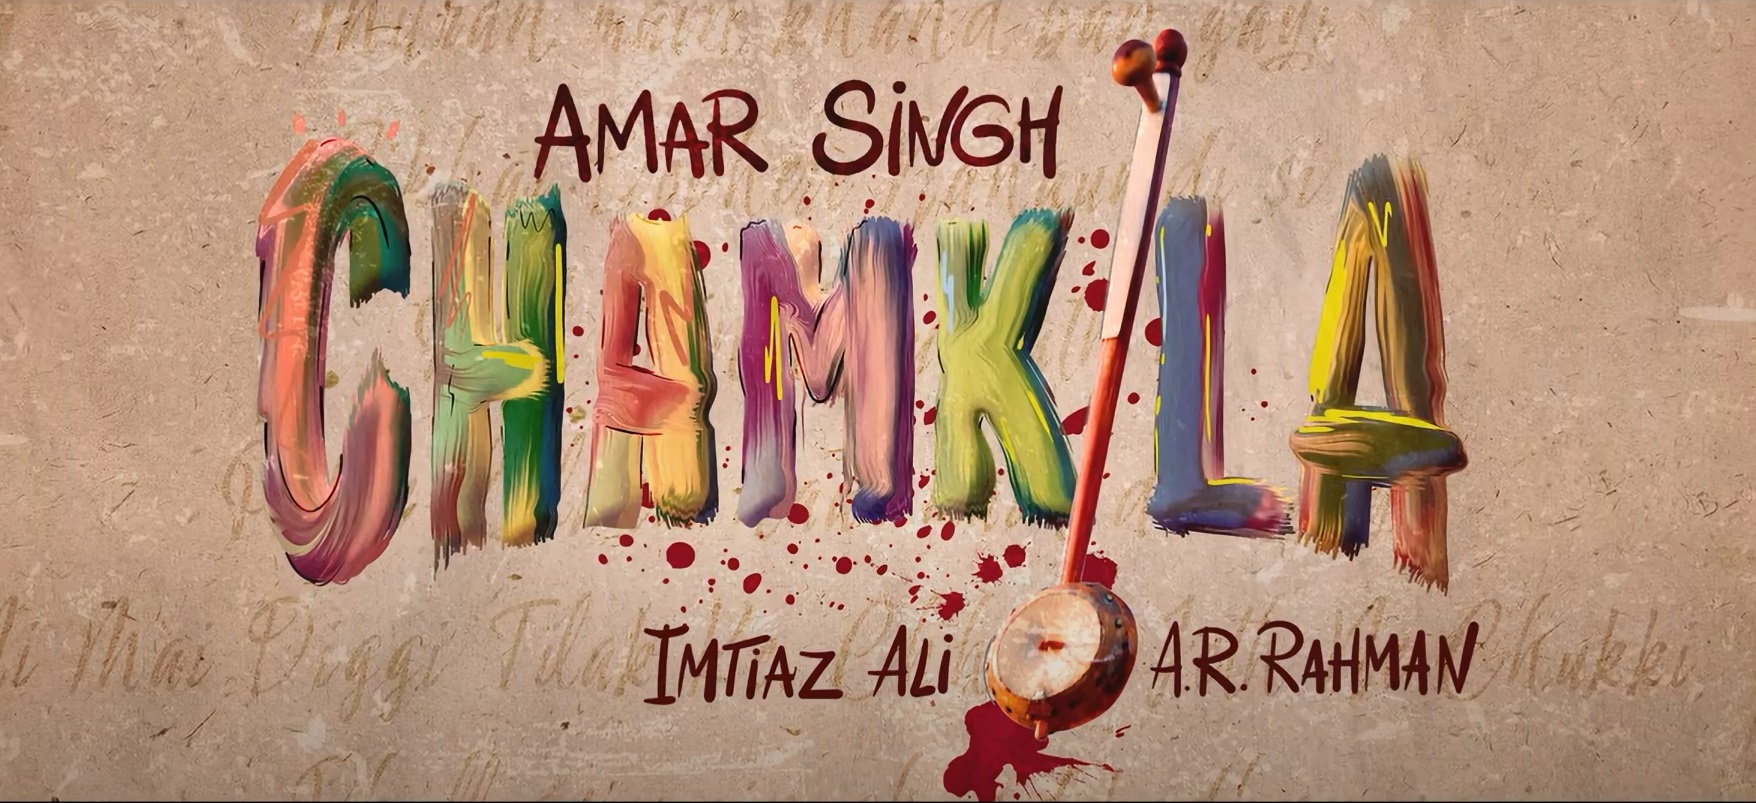 You are currently viewing Amar Singh Chamkila – Trailer | Imtiaz Ali, A.R. Rahman, Diljit Dosanjh